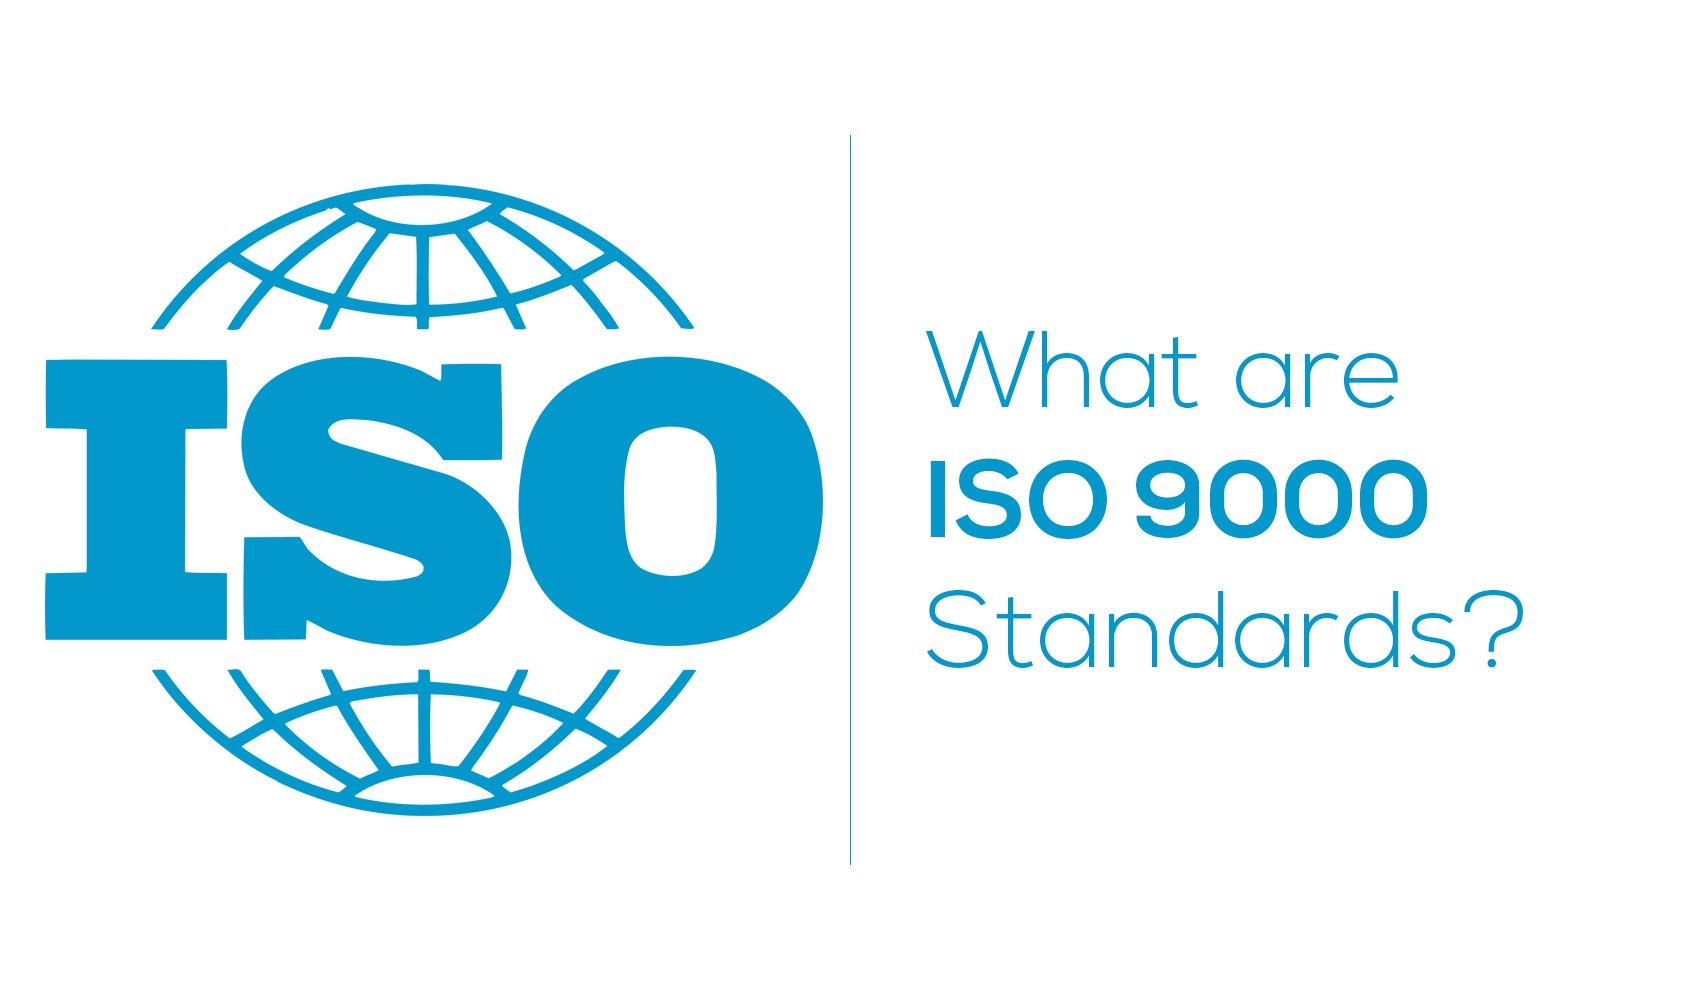 Bộ tiêu chuẩn ISO 9000 là gì?